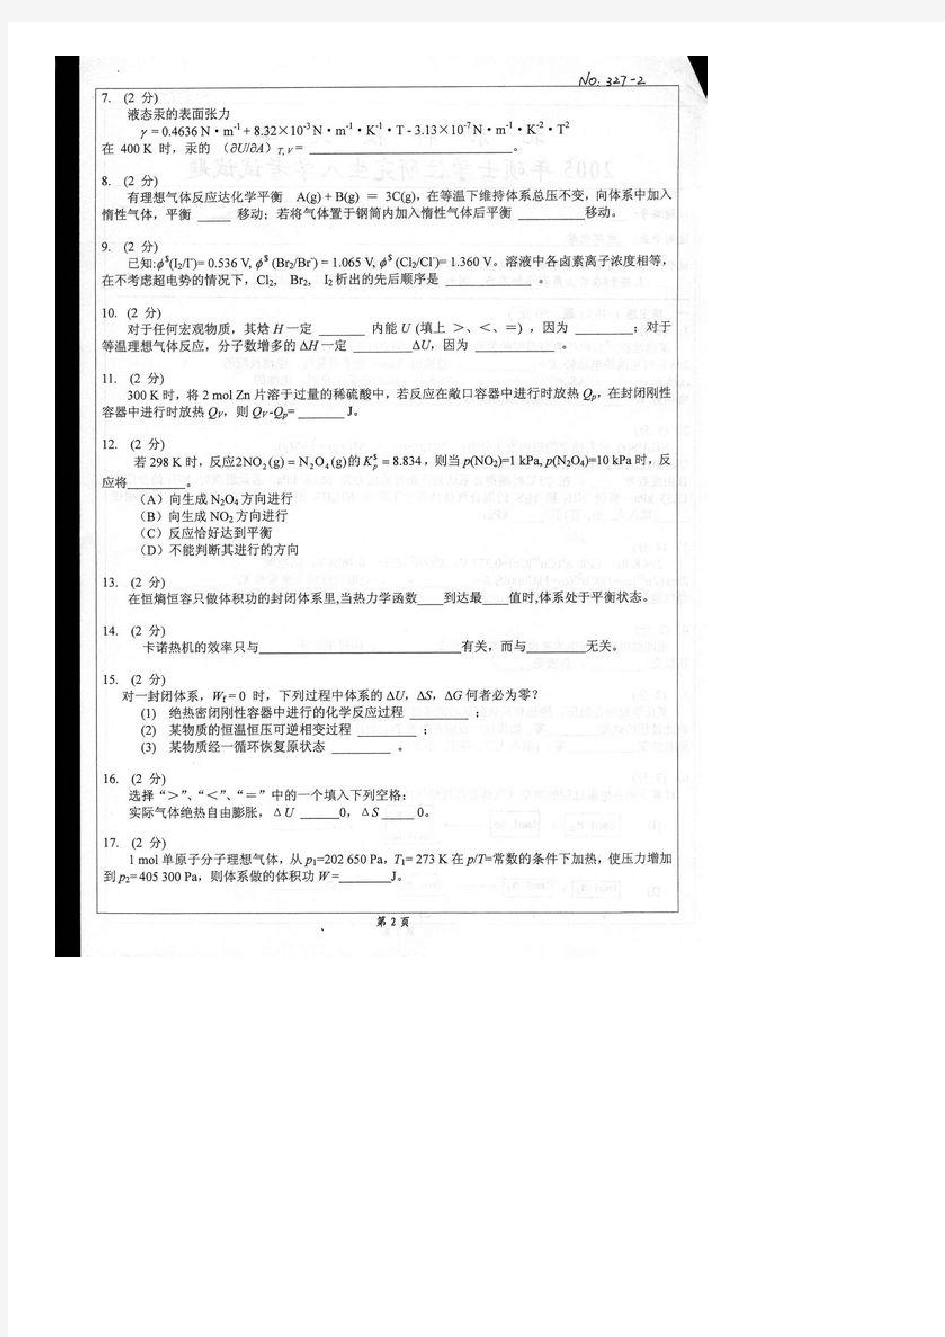 北京科技大学物理化学B历年考研试题共3套!